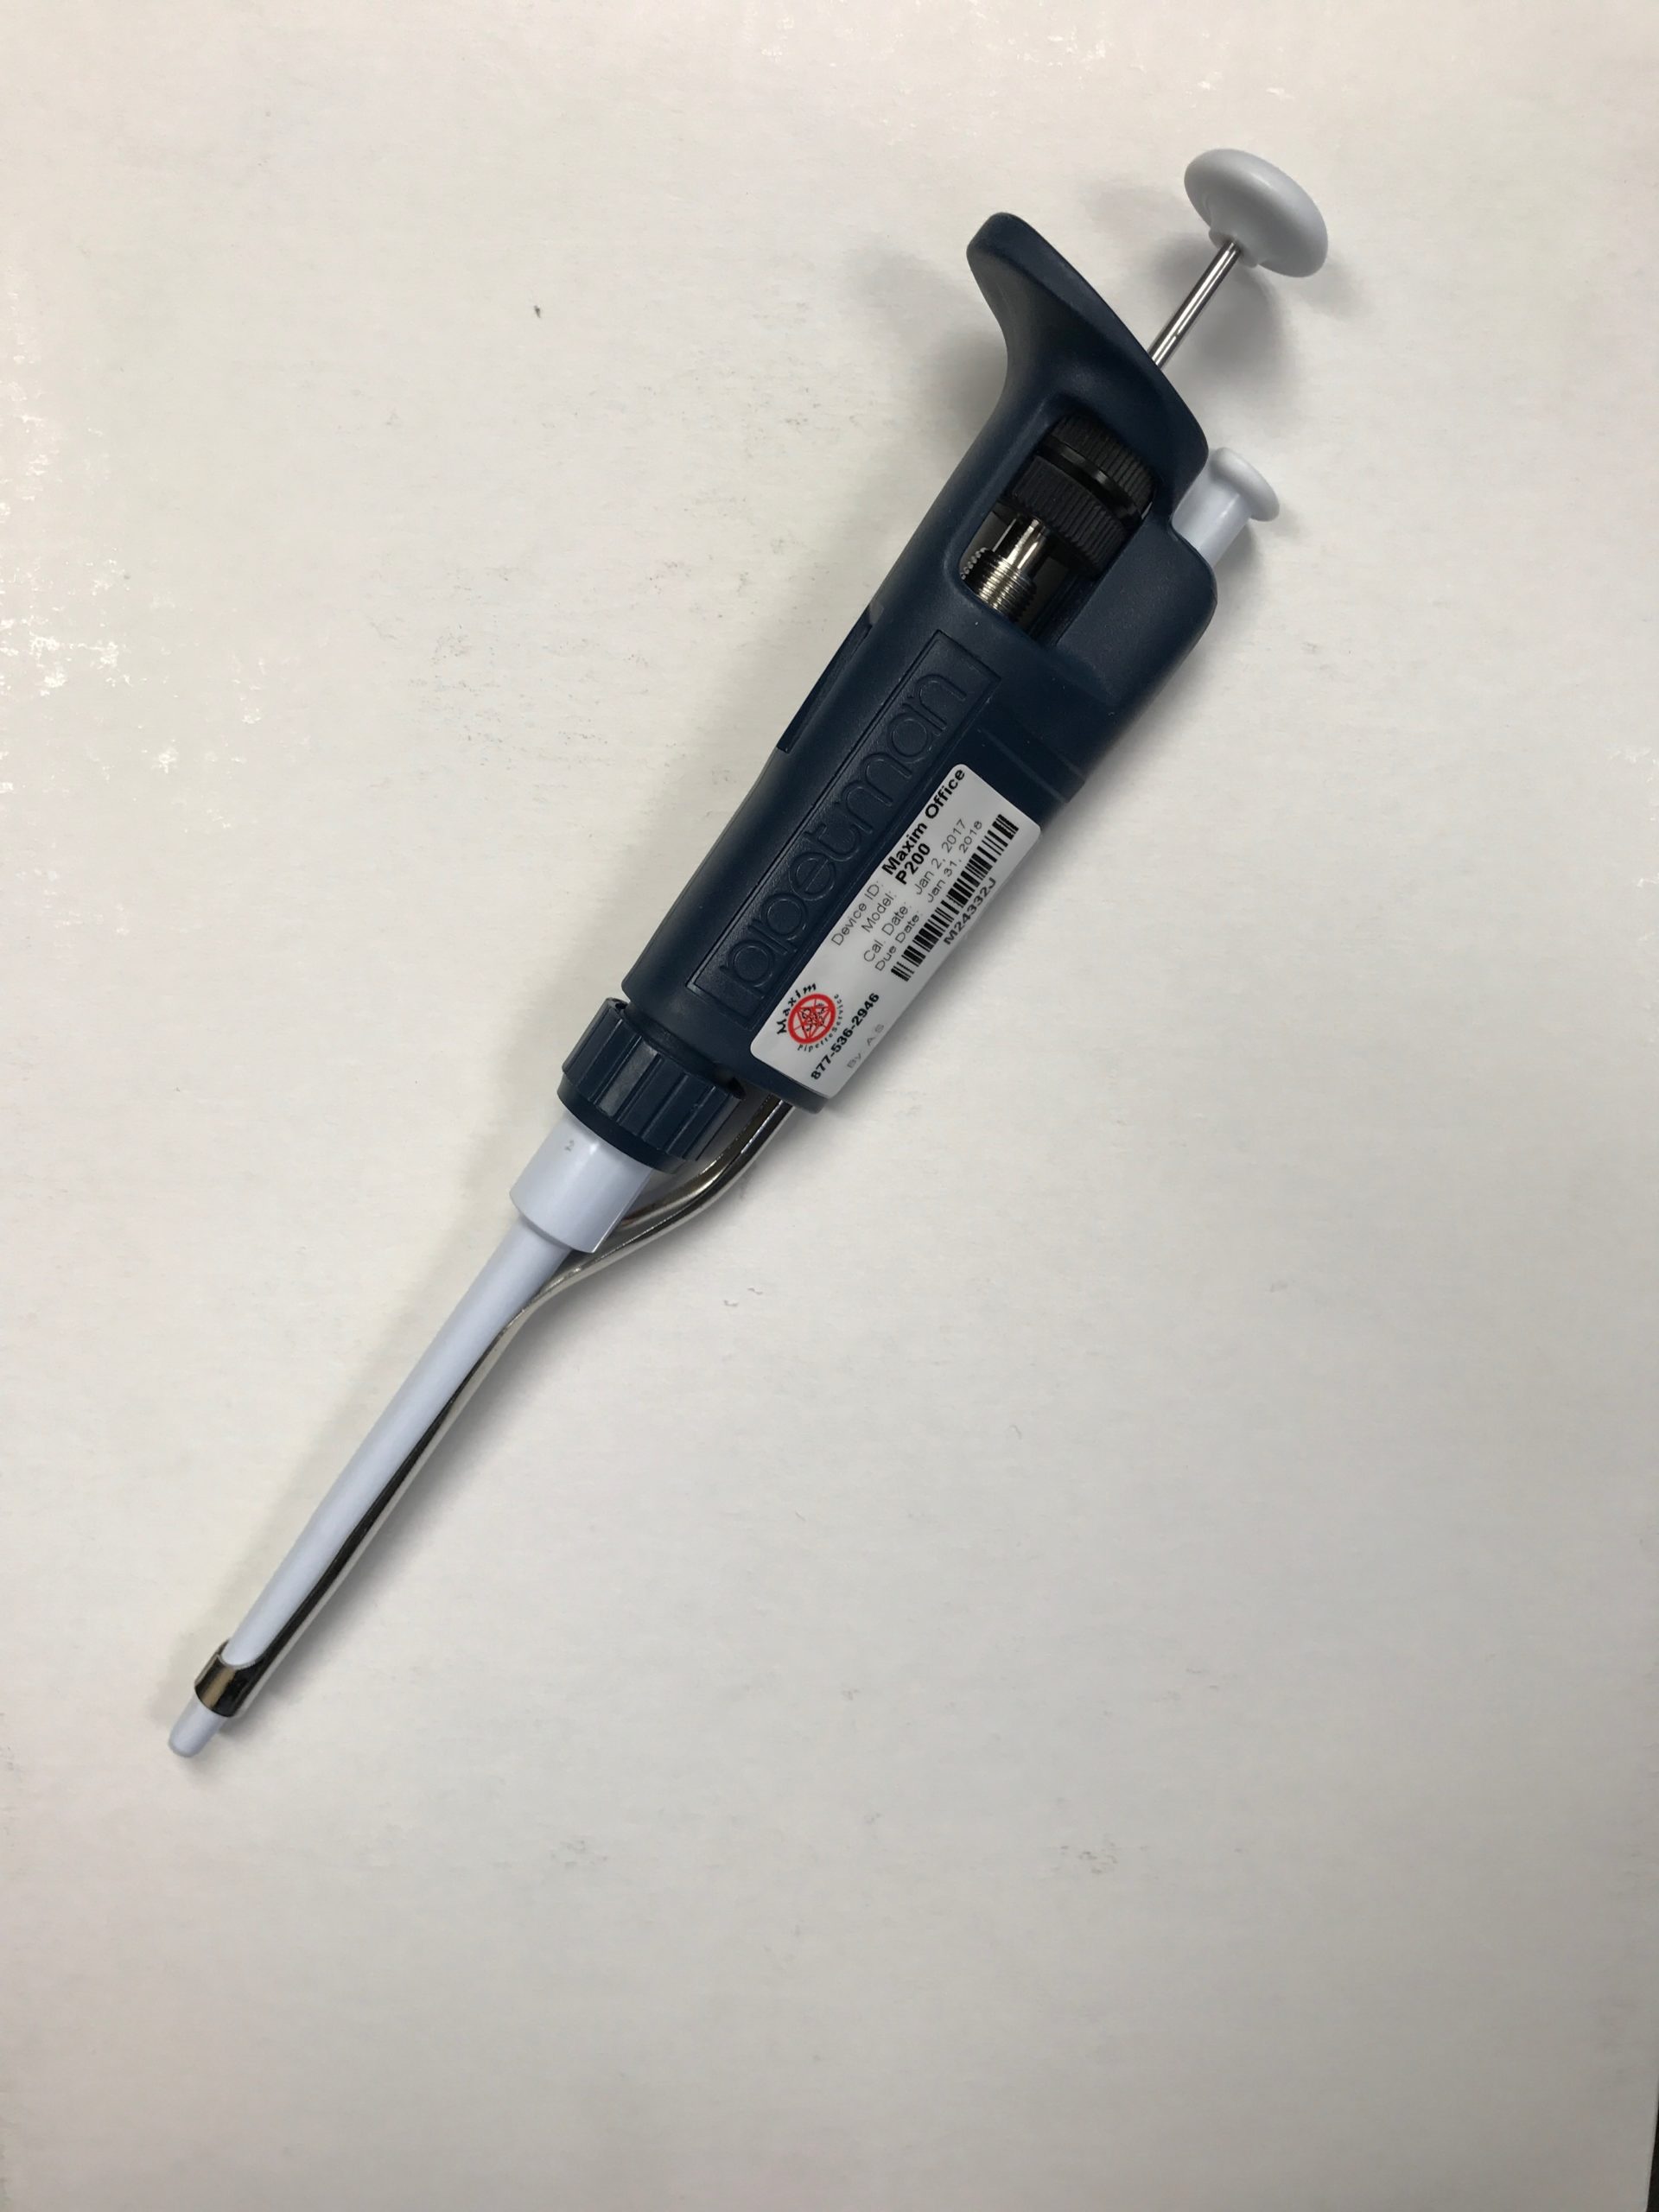 gilson microman pipette calibration